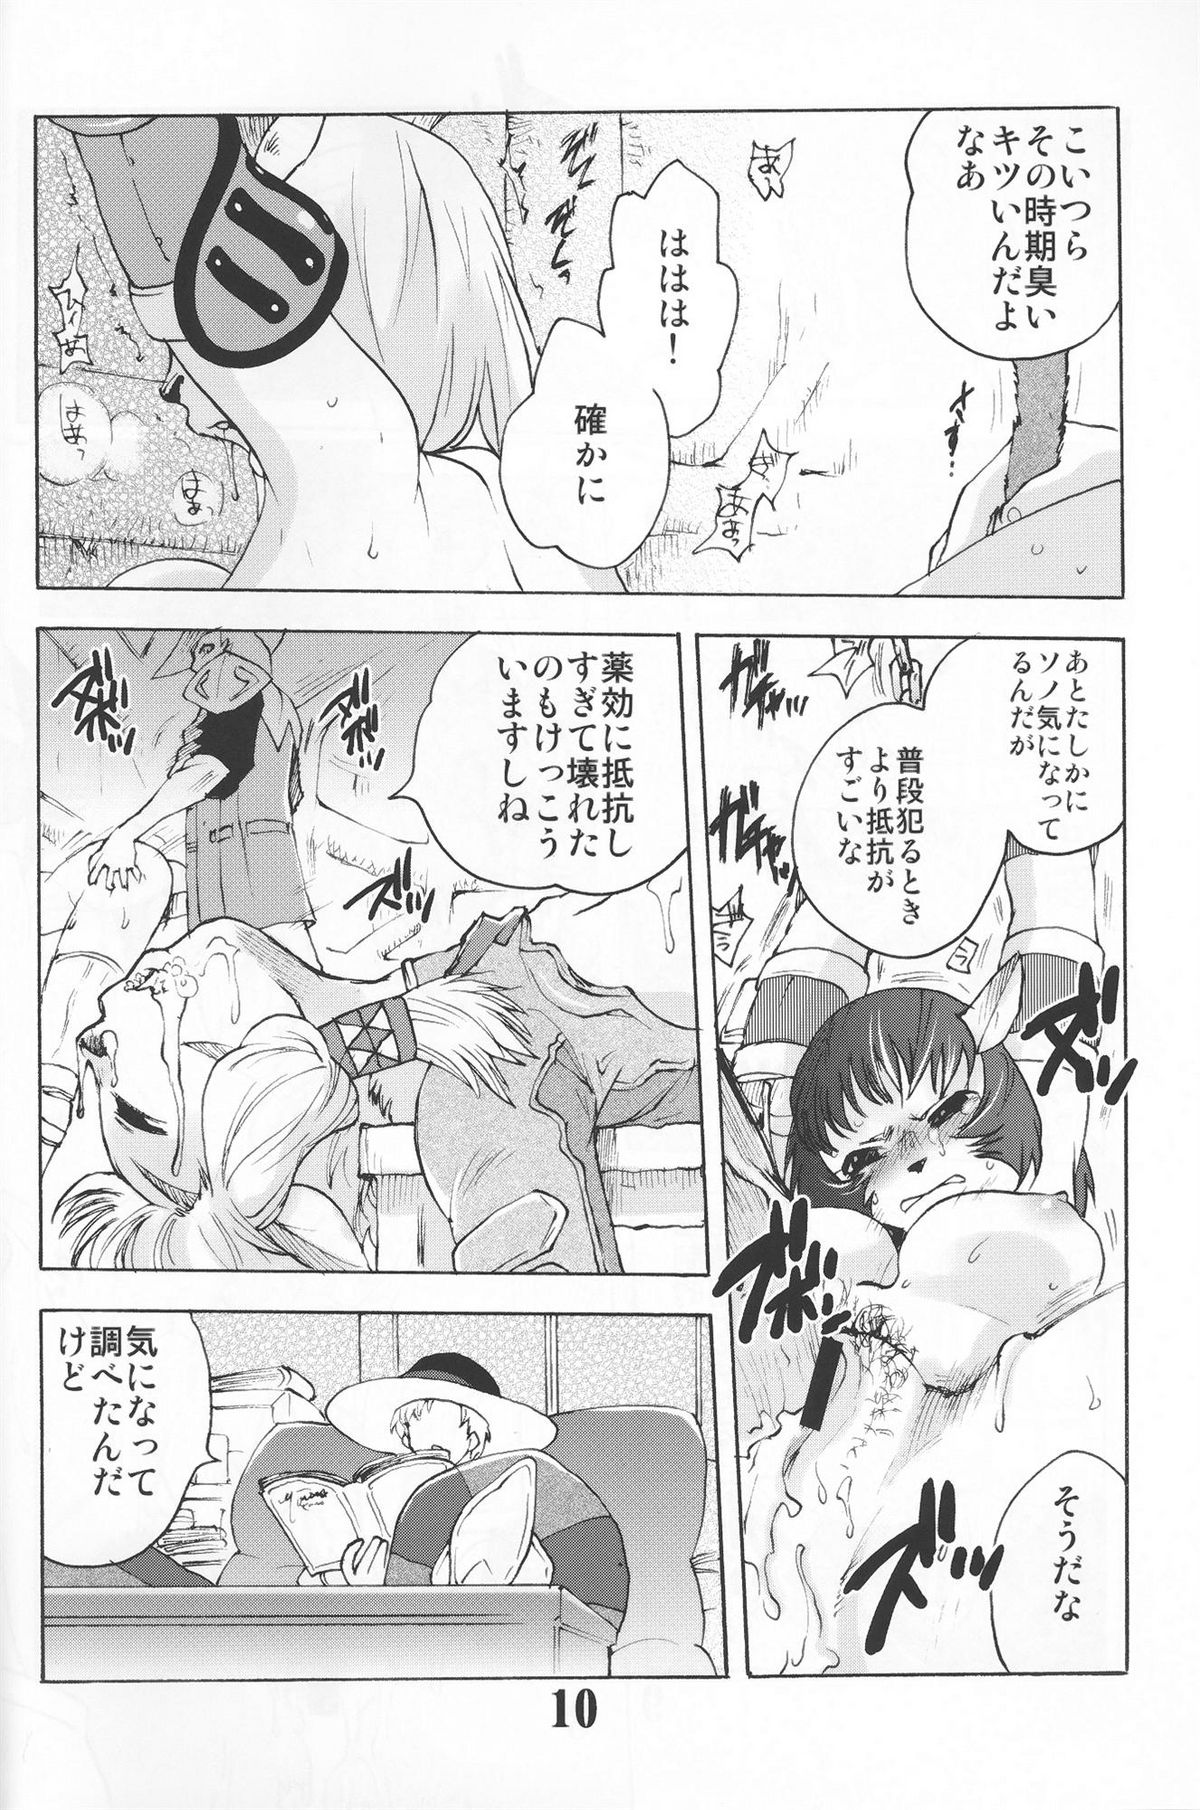 Gedoh XI-4 (外道XI-4) page 9 full